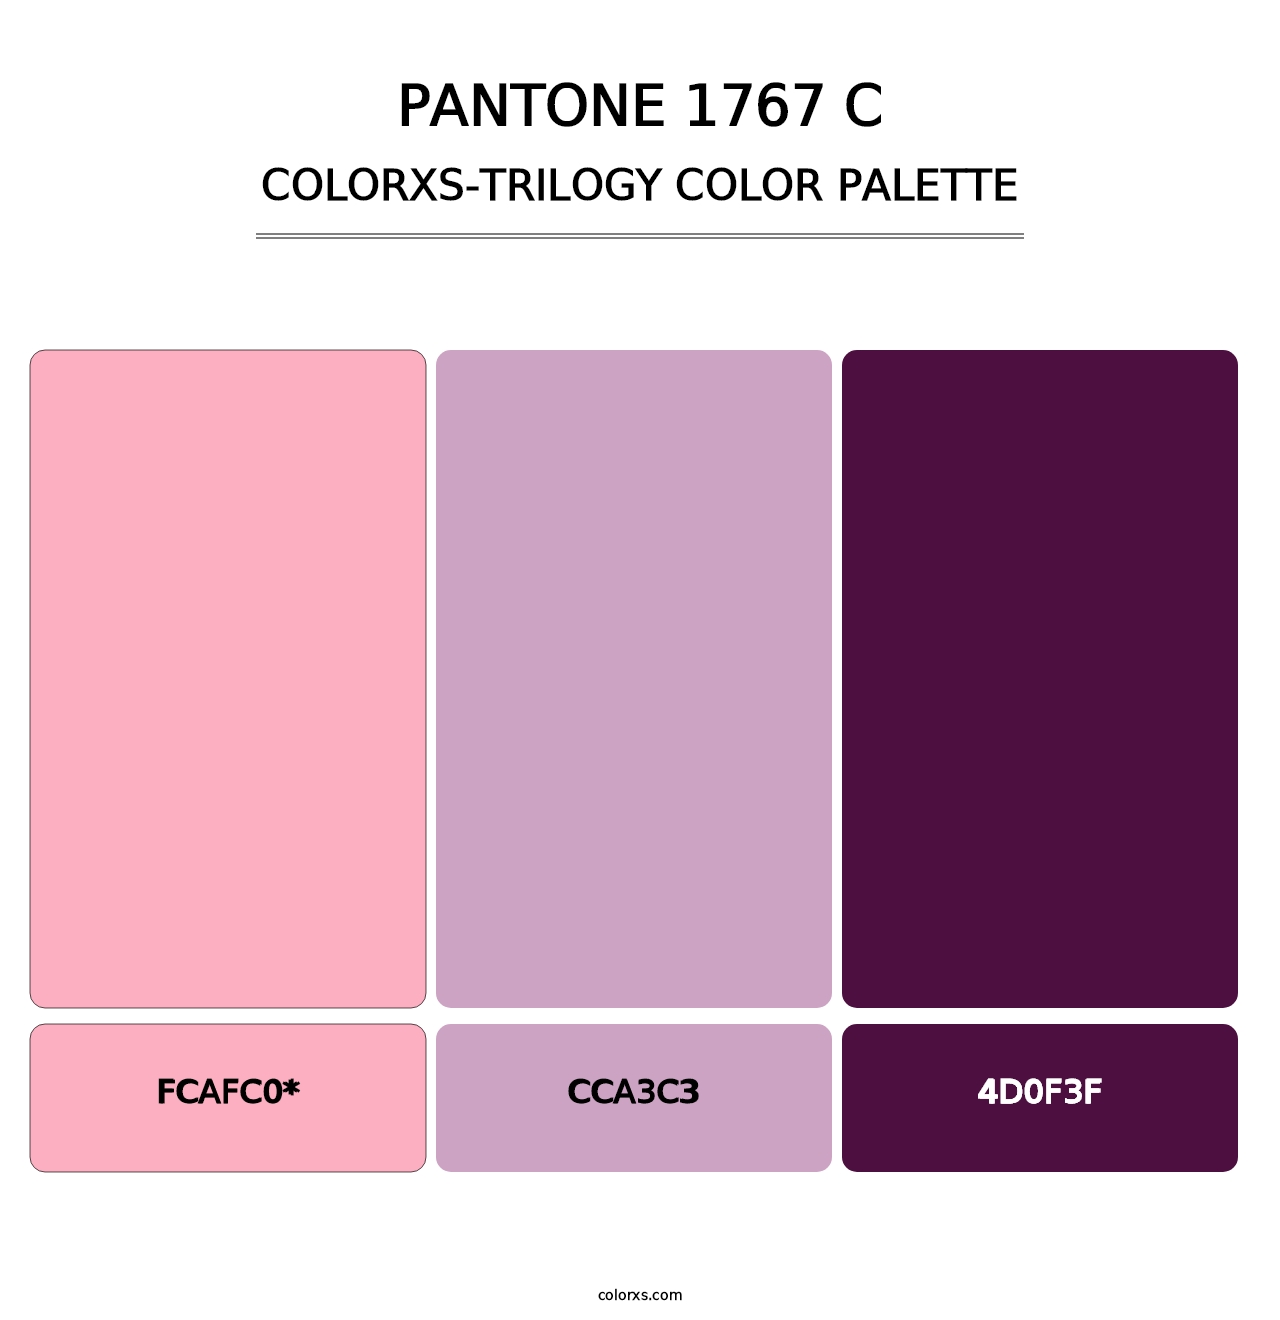 PANTONE 1767 C - Colorxs Trilogy Palette